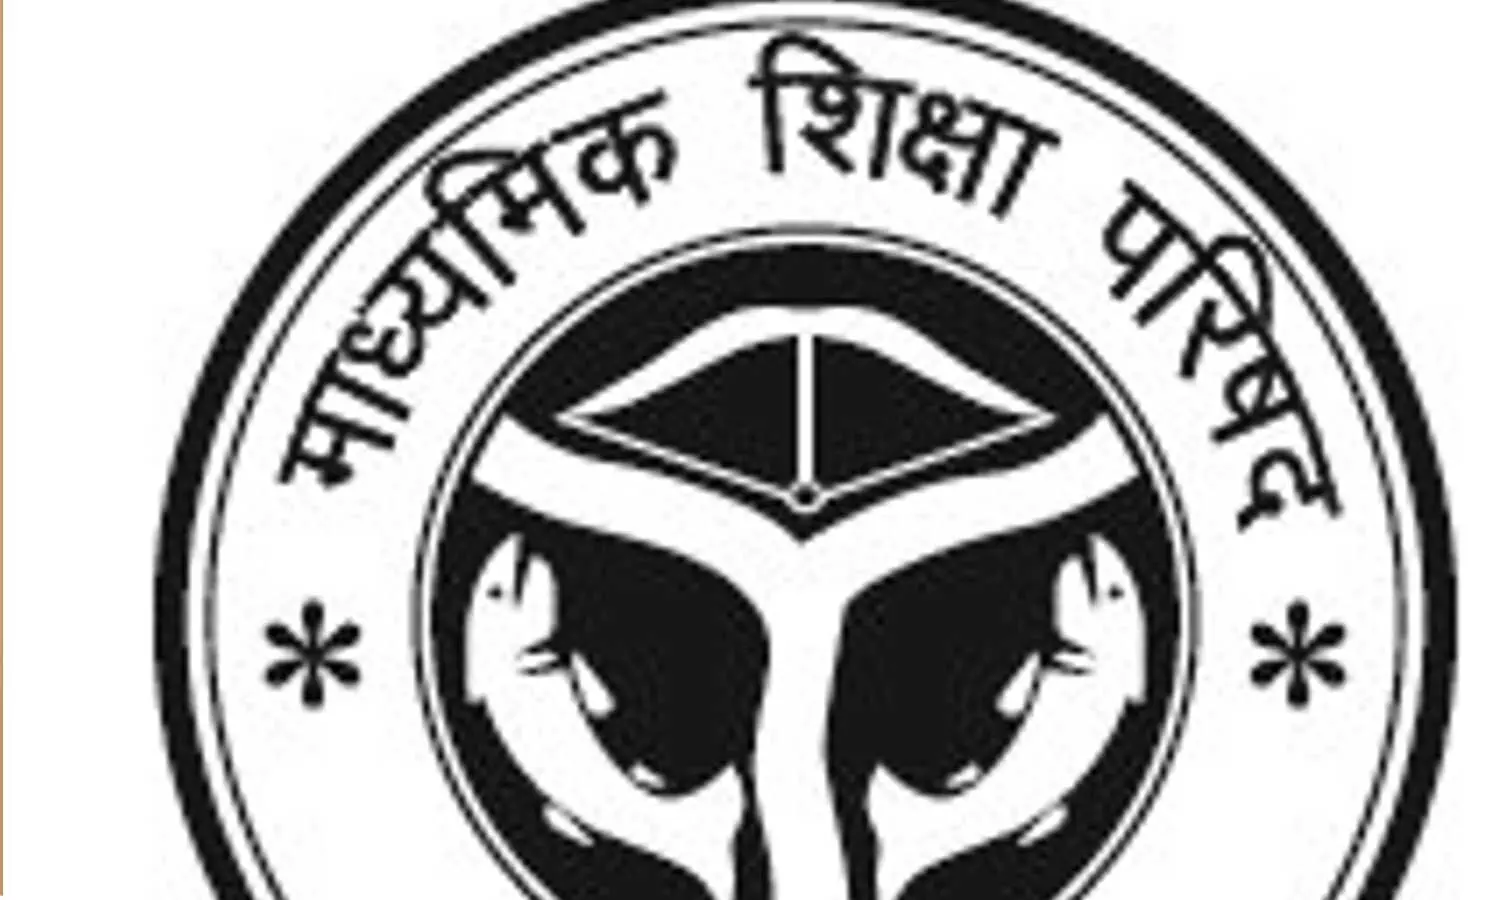 UP Madhyamik Shiksha Parishad: माध्यमिक शिक्षा परिषद परीक्षा के पंजीकरण की आवेदन तिथि 20 नवंबर तक बढ़ाई गई